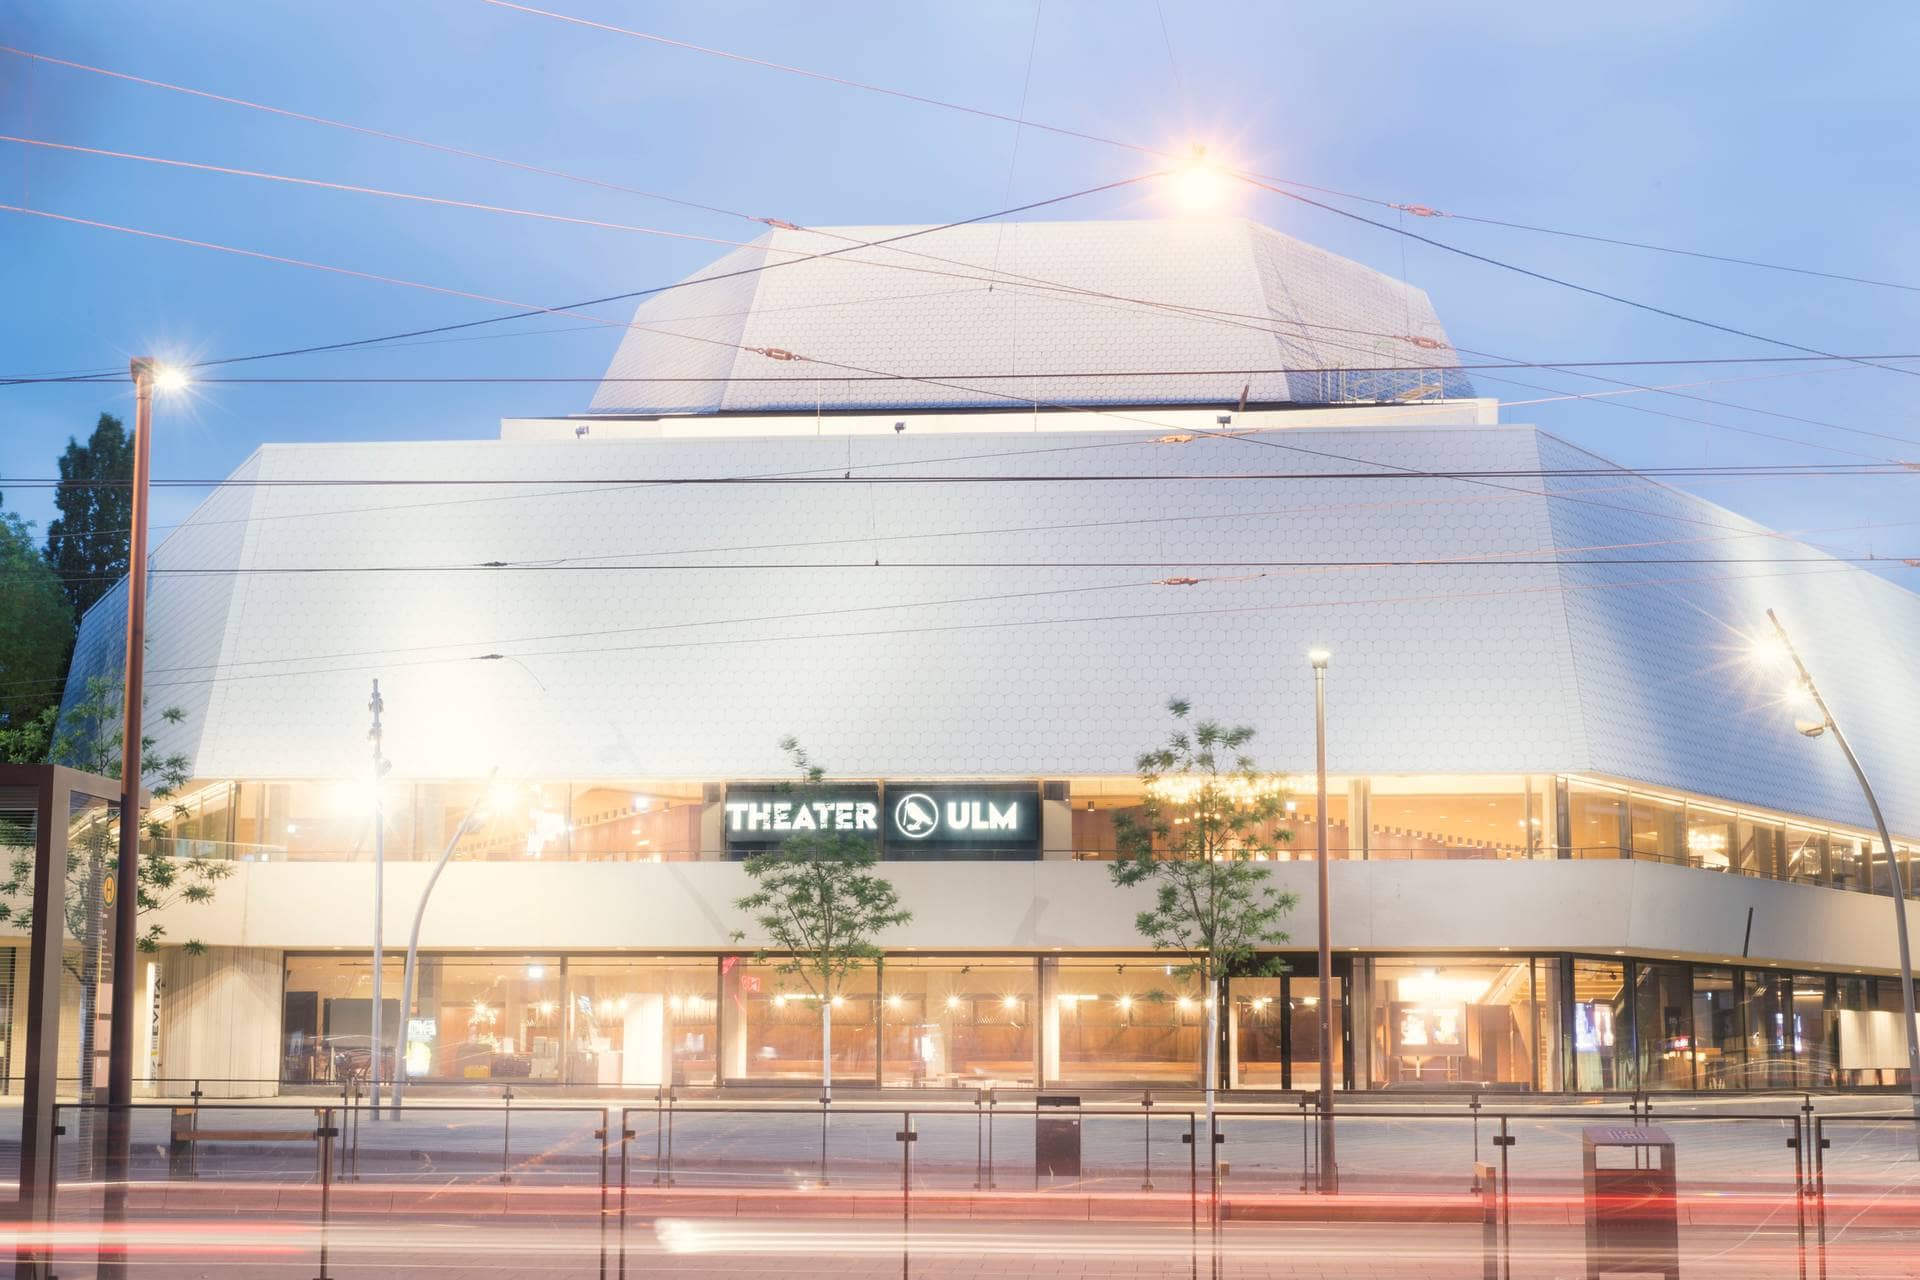 Das Theater Ulm ist voll erleuchtet und strahlend weiß zu sehen